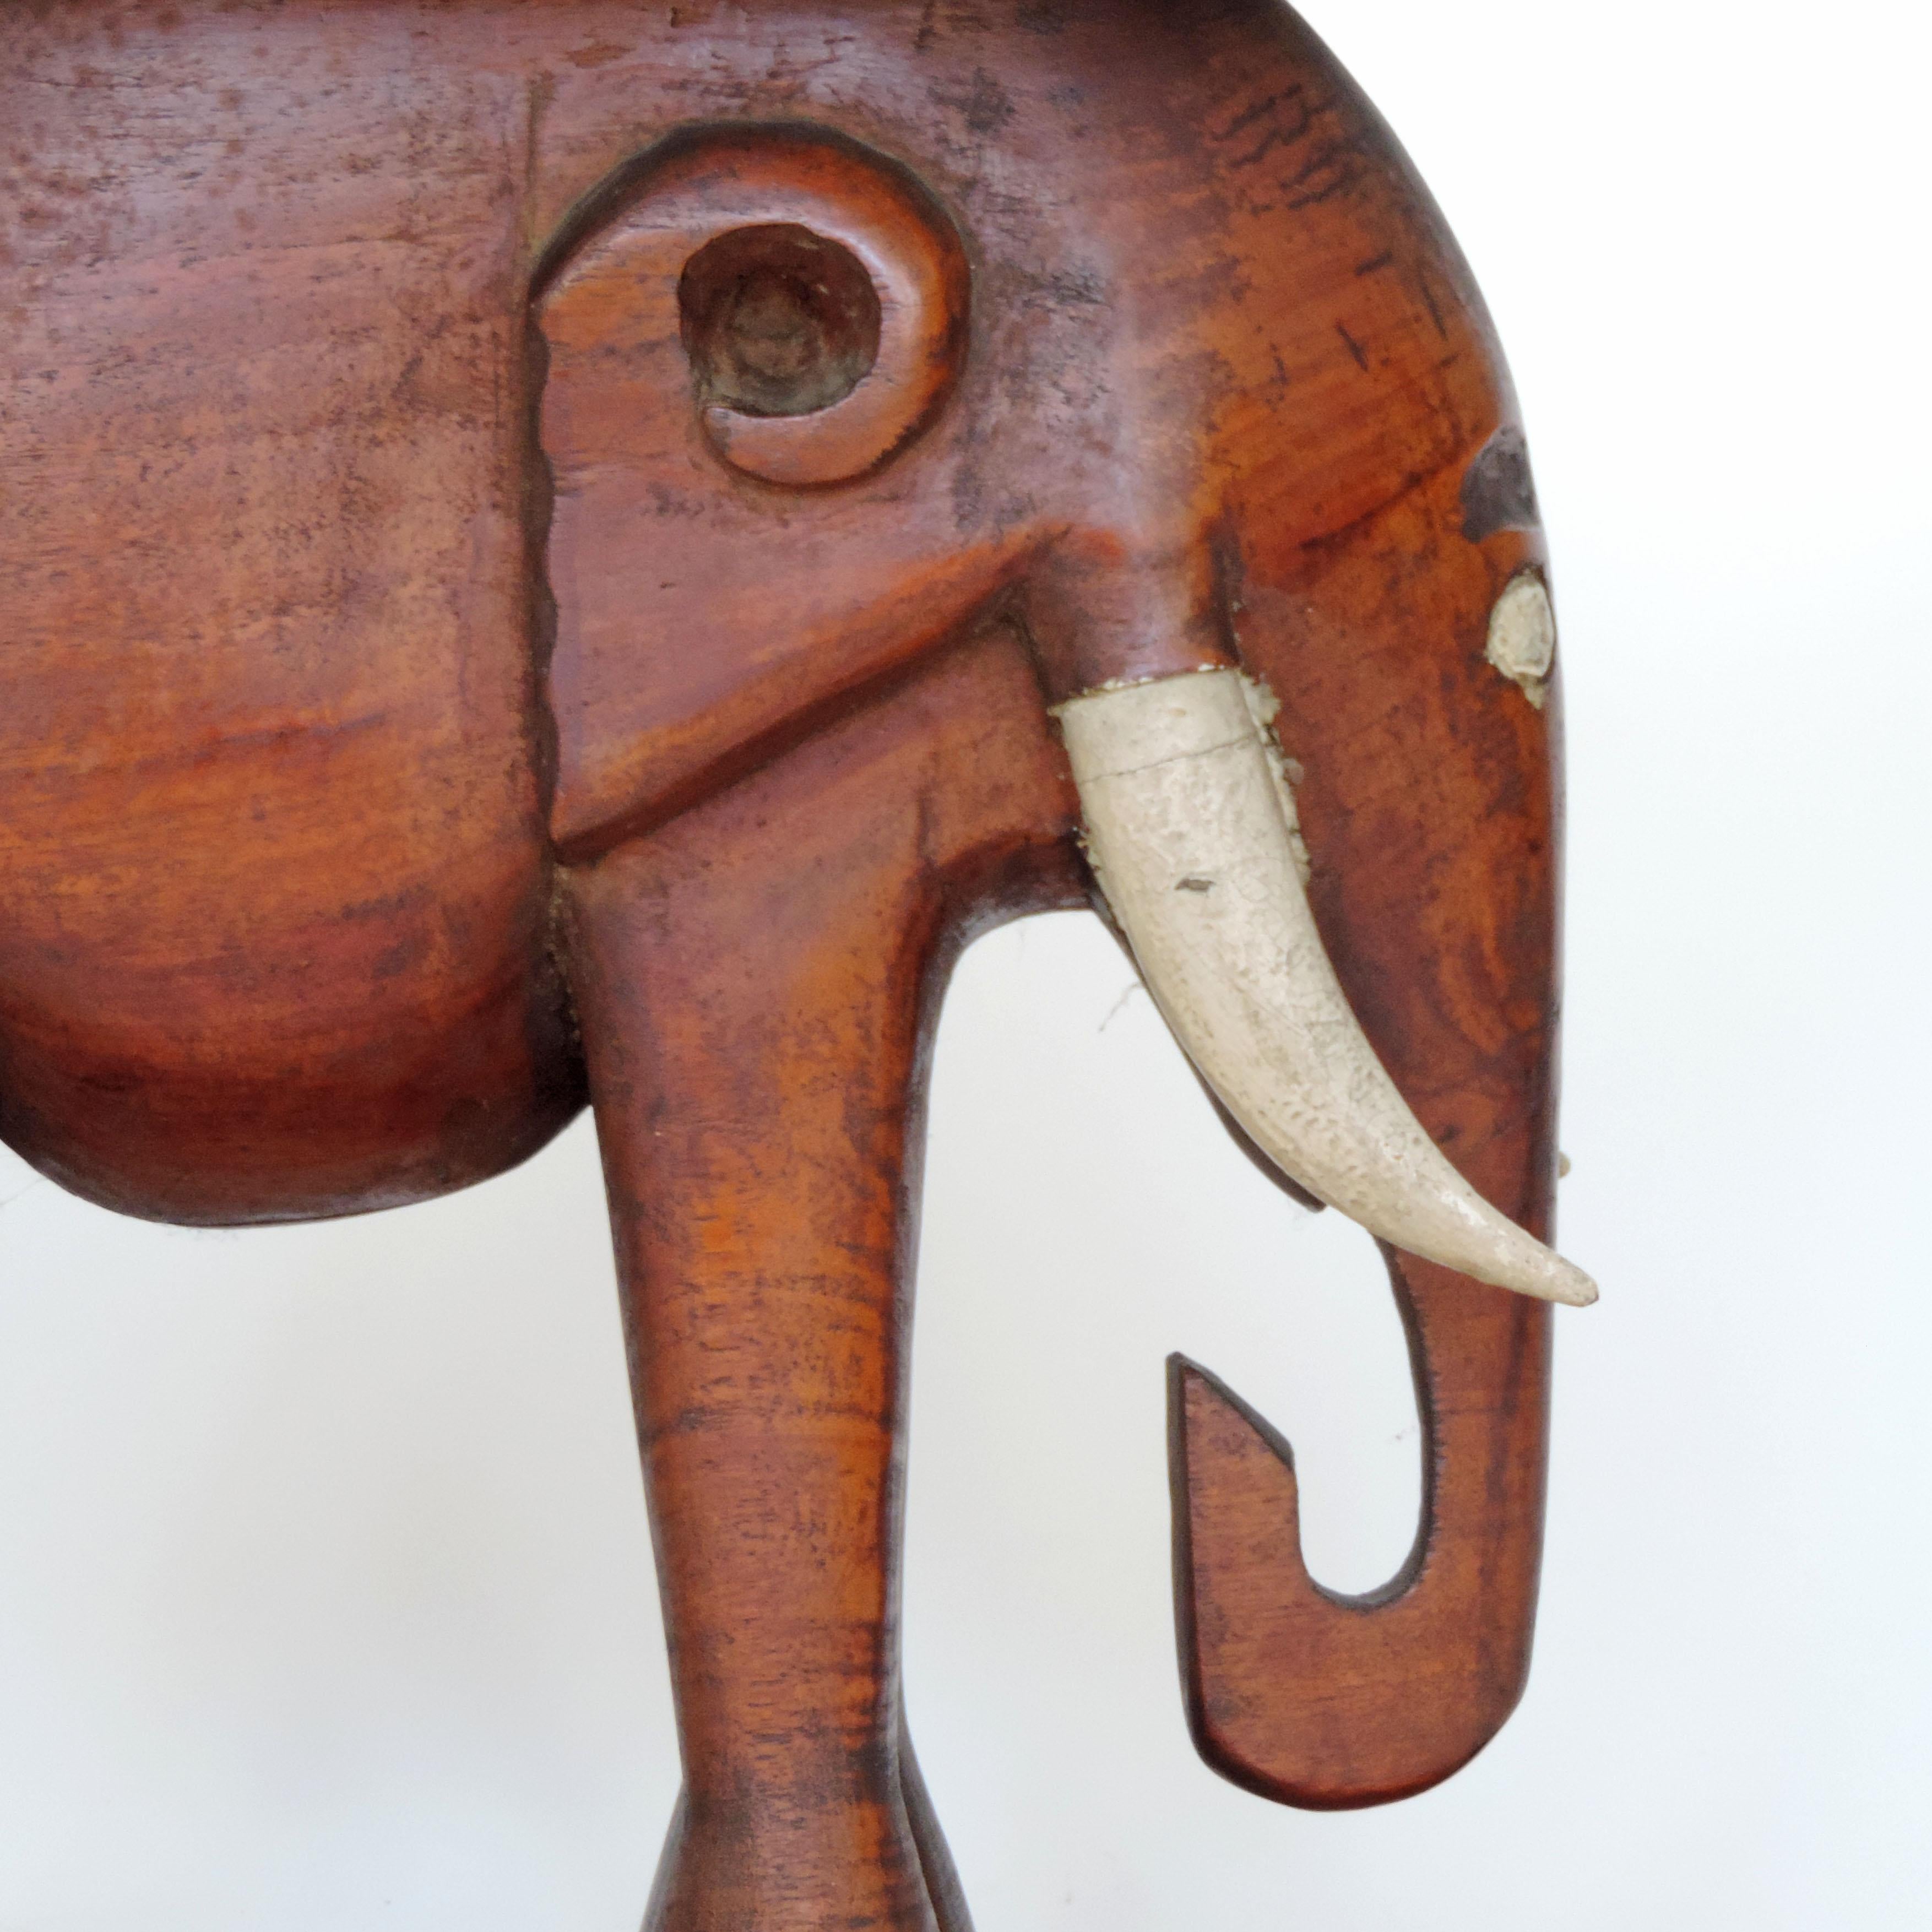 Afrikanischer Art Deco Ashanti Elefantenhocker, Ghana, 1920er Jahre
Wunderbar geschnitztes Stück.

Ein ähnliches Stück ist für ein Paar erhältlich.